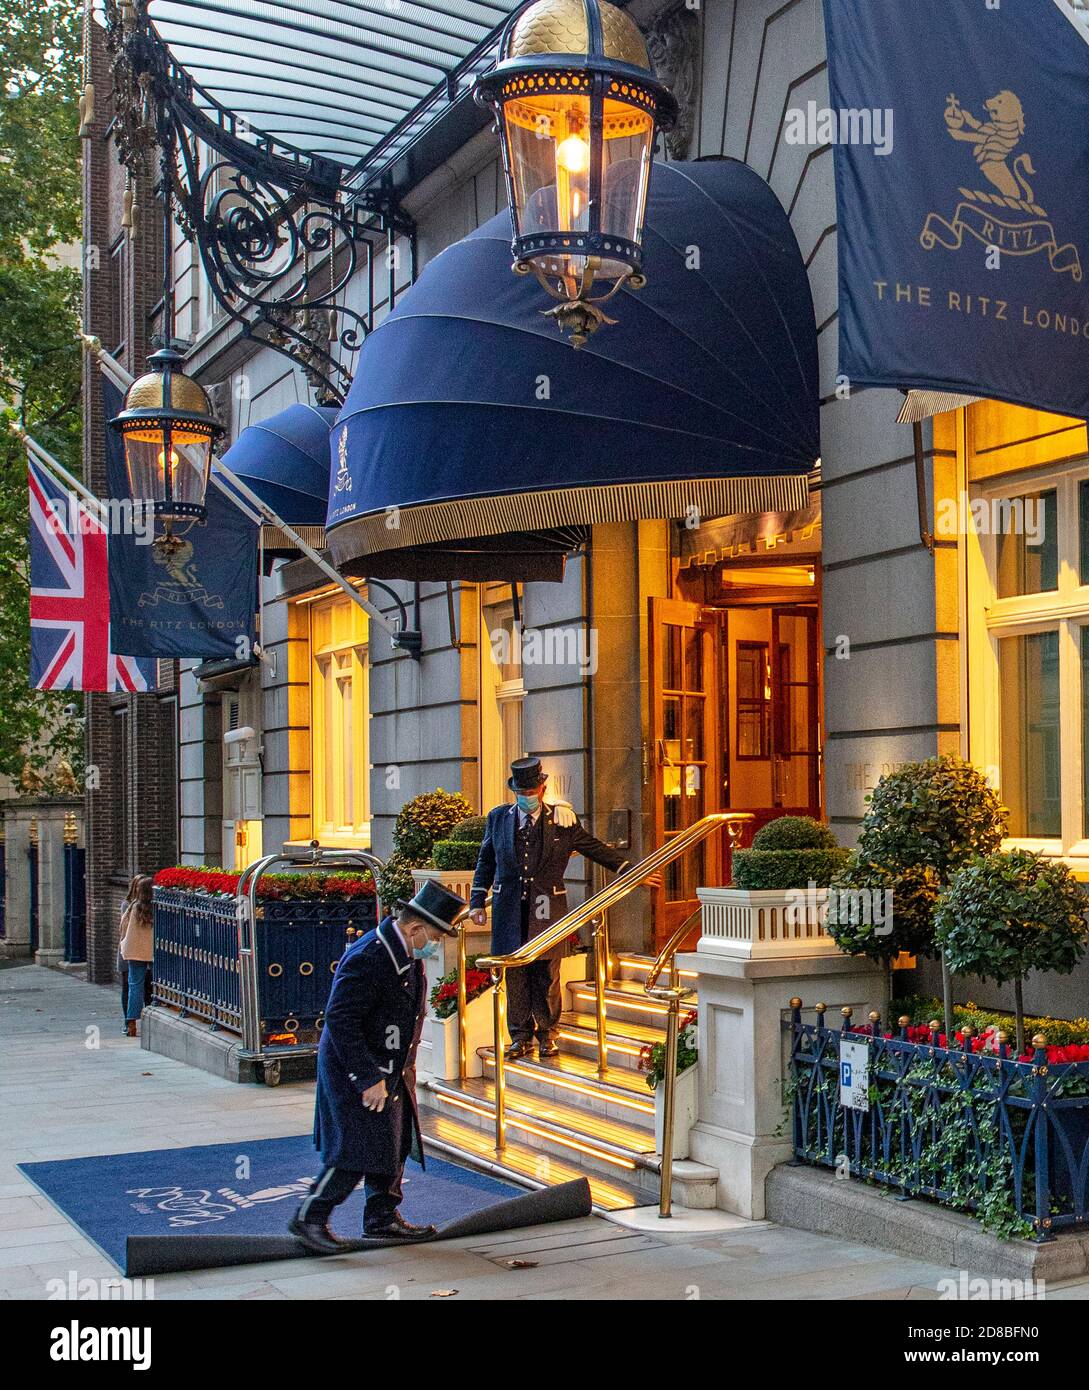 Zwei Portiers vor dem Eingang der Arlington St des Ritz Hotels in London; sie tragen Masken gegen Covid und warten auf die Gäste. Stockfoto